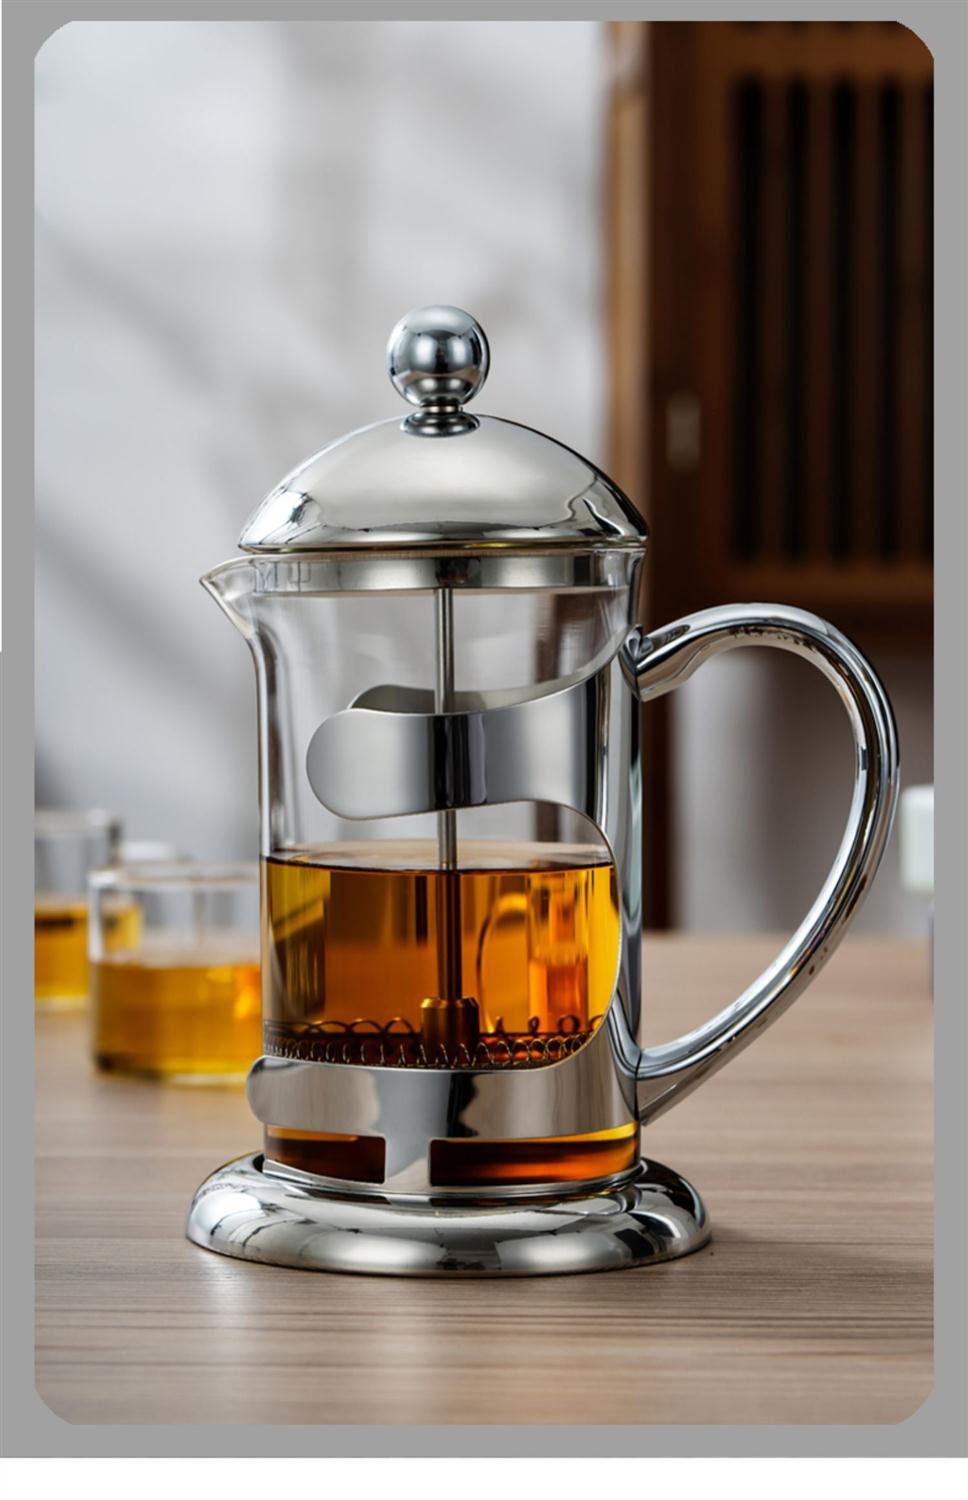 法压壶玻璃泡茶壶不锈钢泡茶器耐热冲茶器咖啡壶茶壶滤压茶壶300ml单